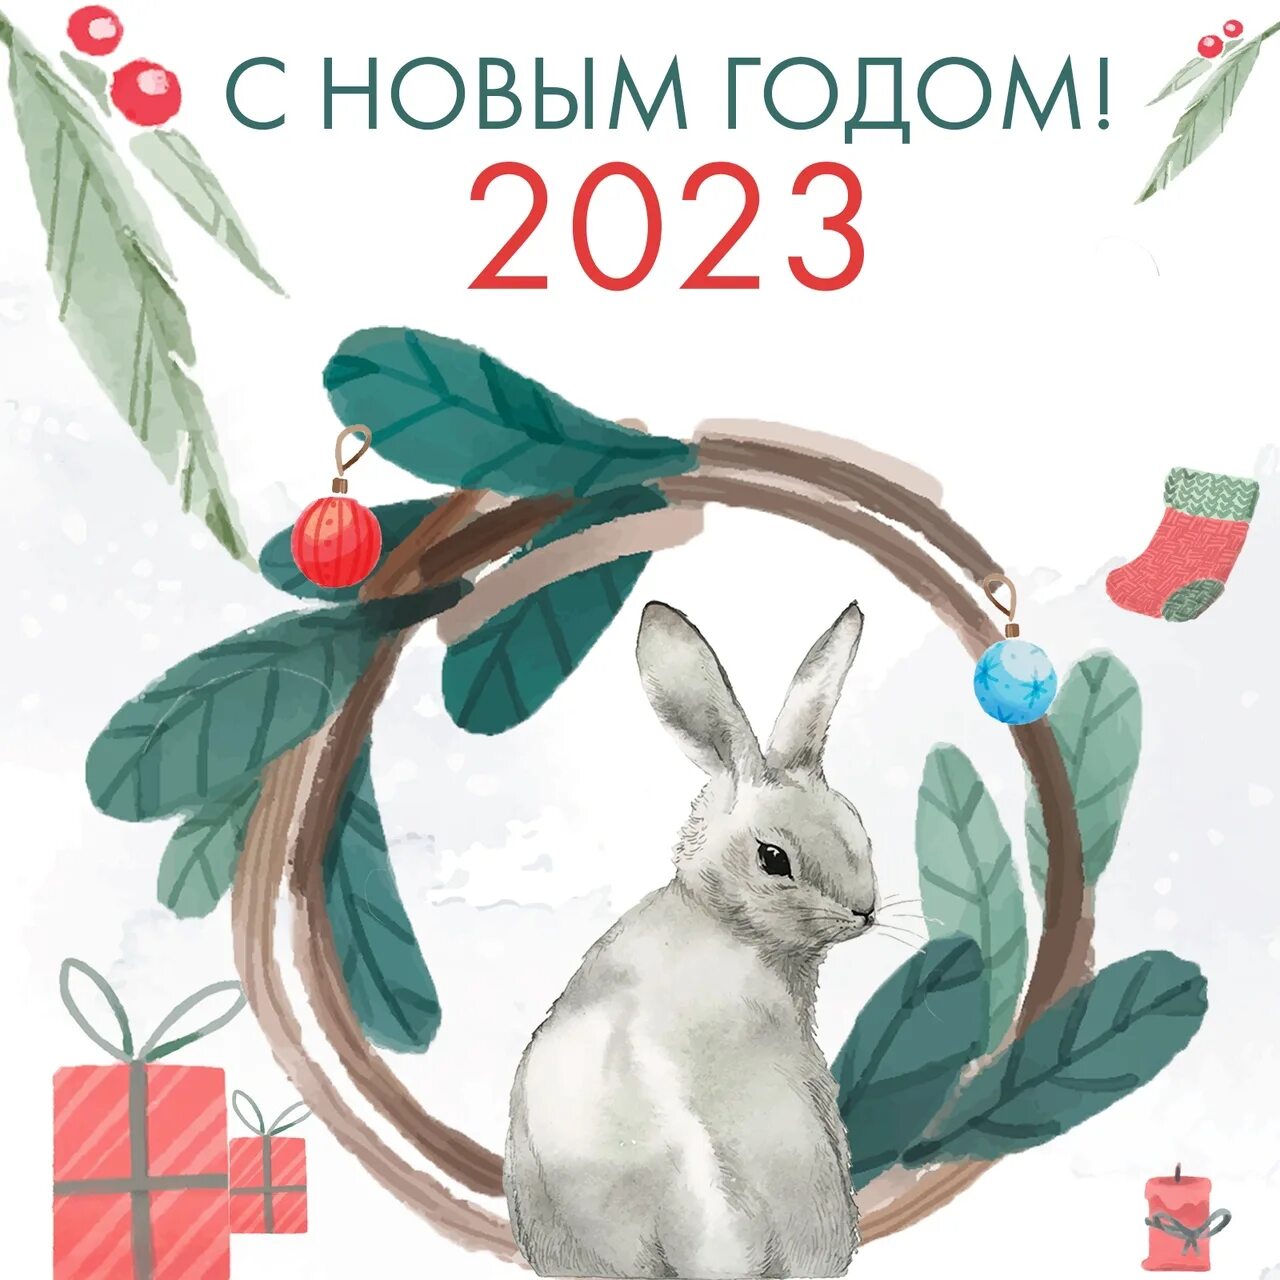 Открытки на новый год 2023. Новогодние открытки 2023 года. Новогодние открытки с пожеланиями 2023 года. Новогодняя открытка для клиентов 2023 год.